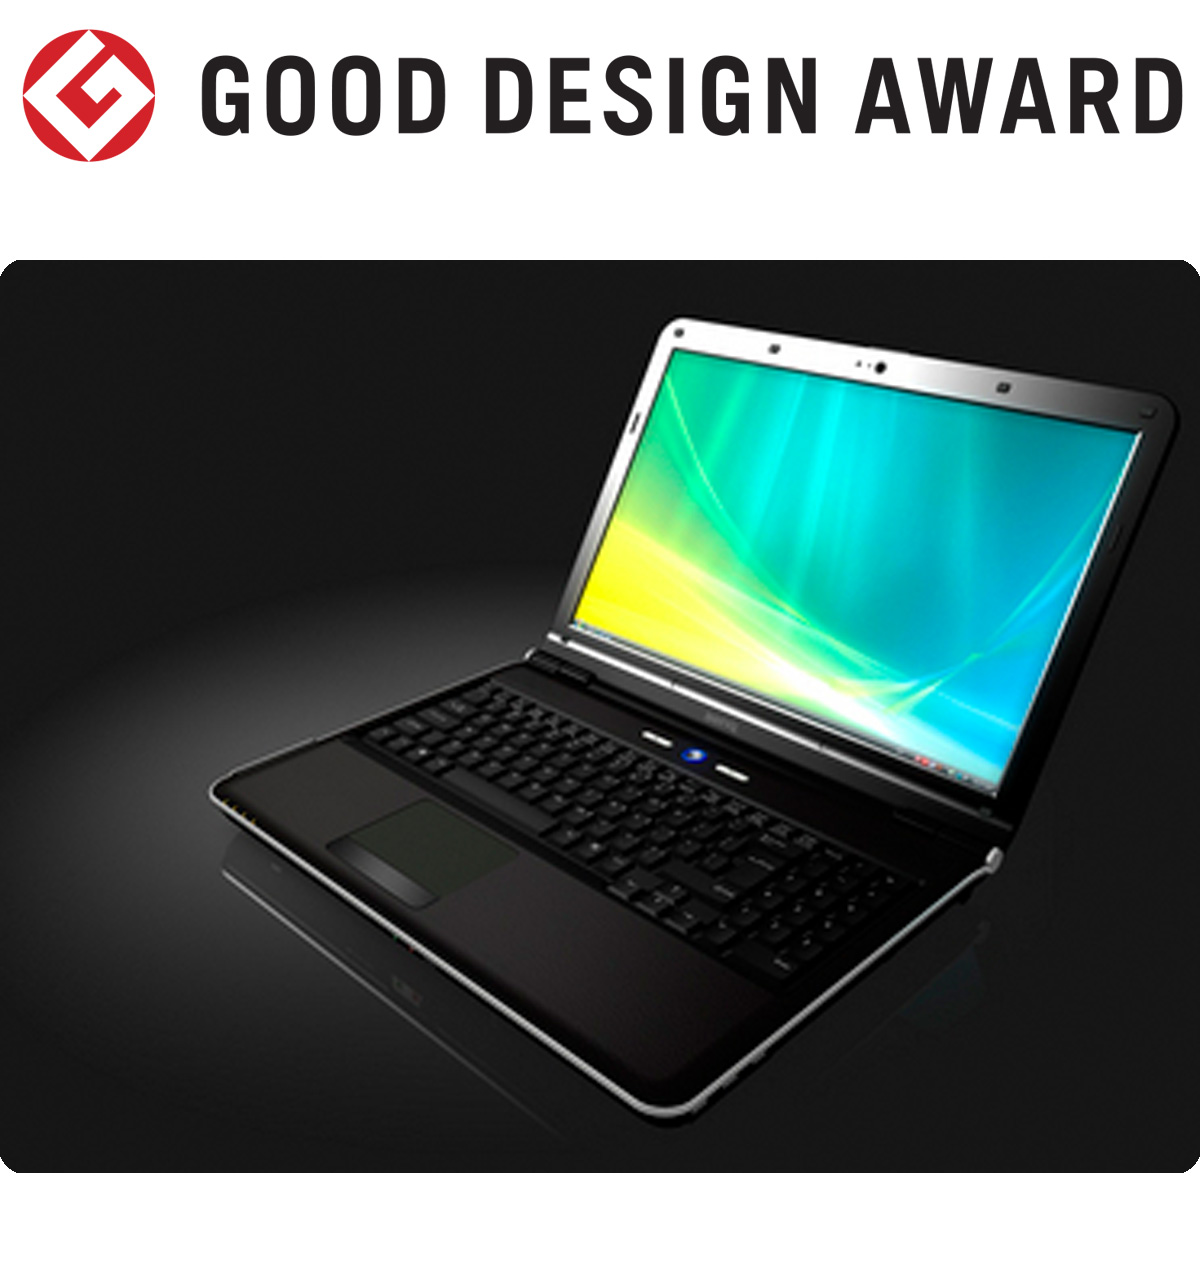 【日本】明基BenQ笔记本电脑Joybook P53获颁2008年度G-Mark设计大奖（GOOD DESIGN AWARD 2008）